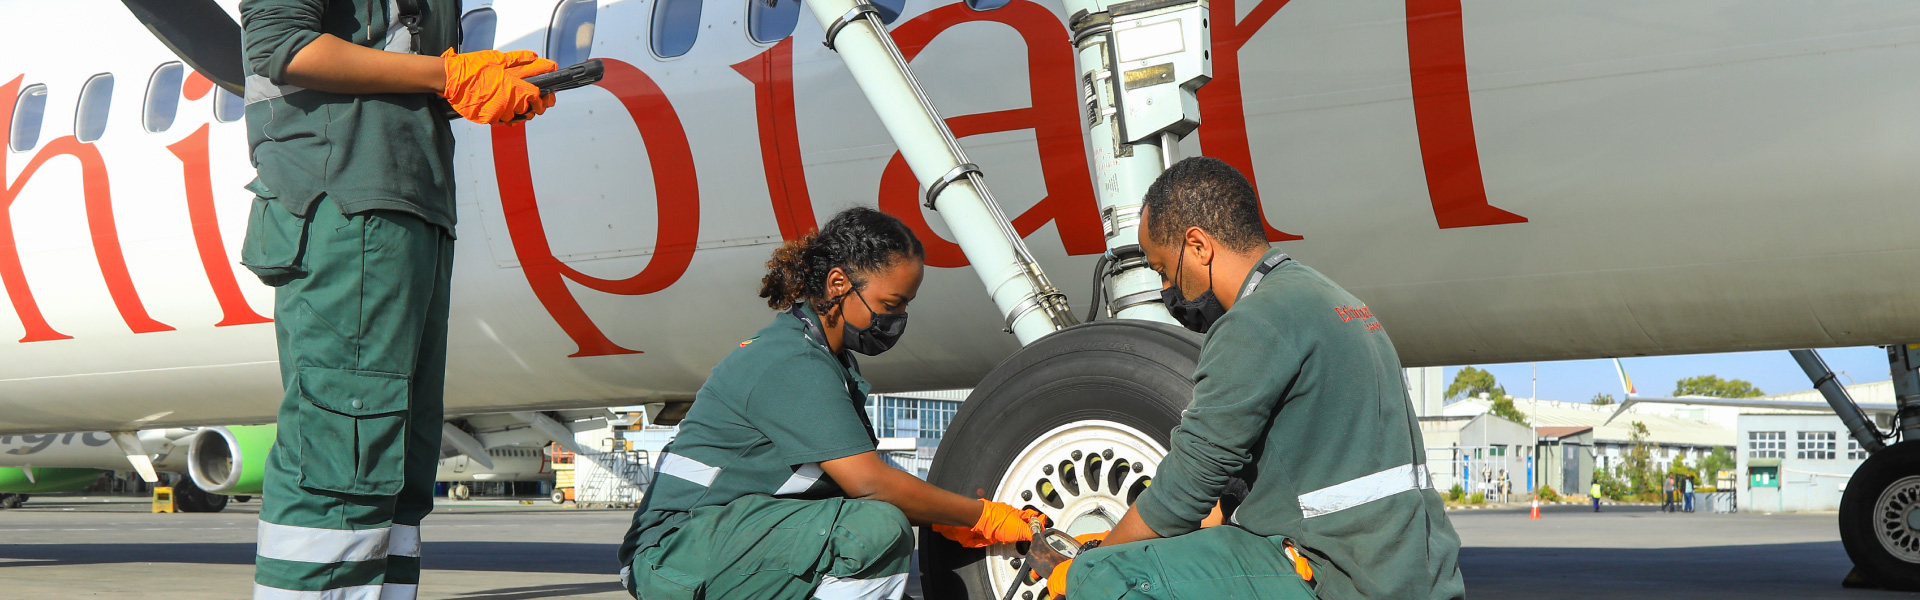 Ethiopian Airlines Maintenance Repair and Overhaul